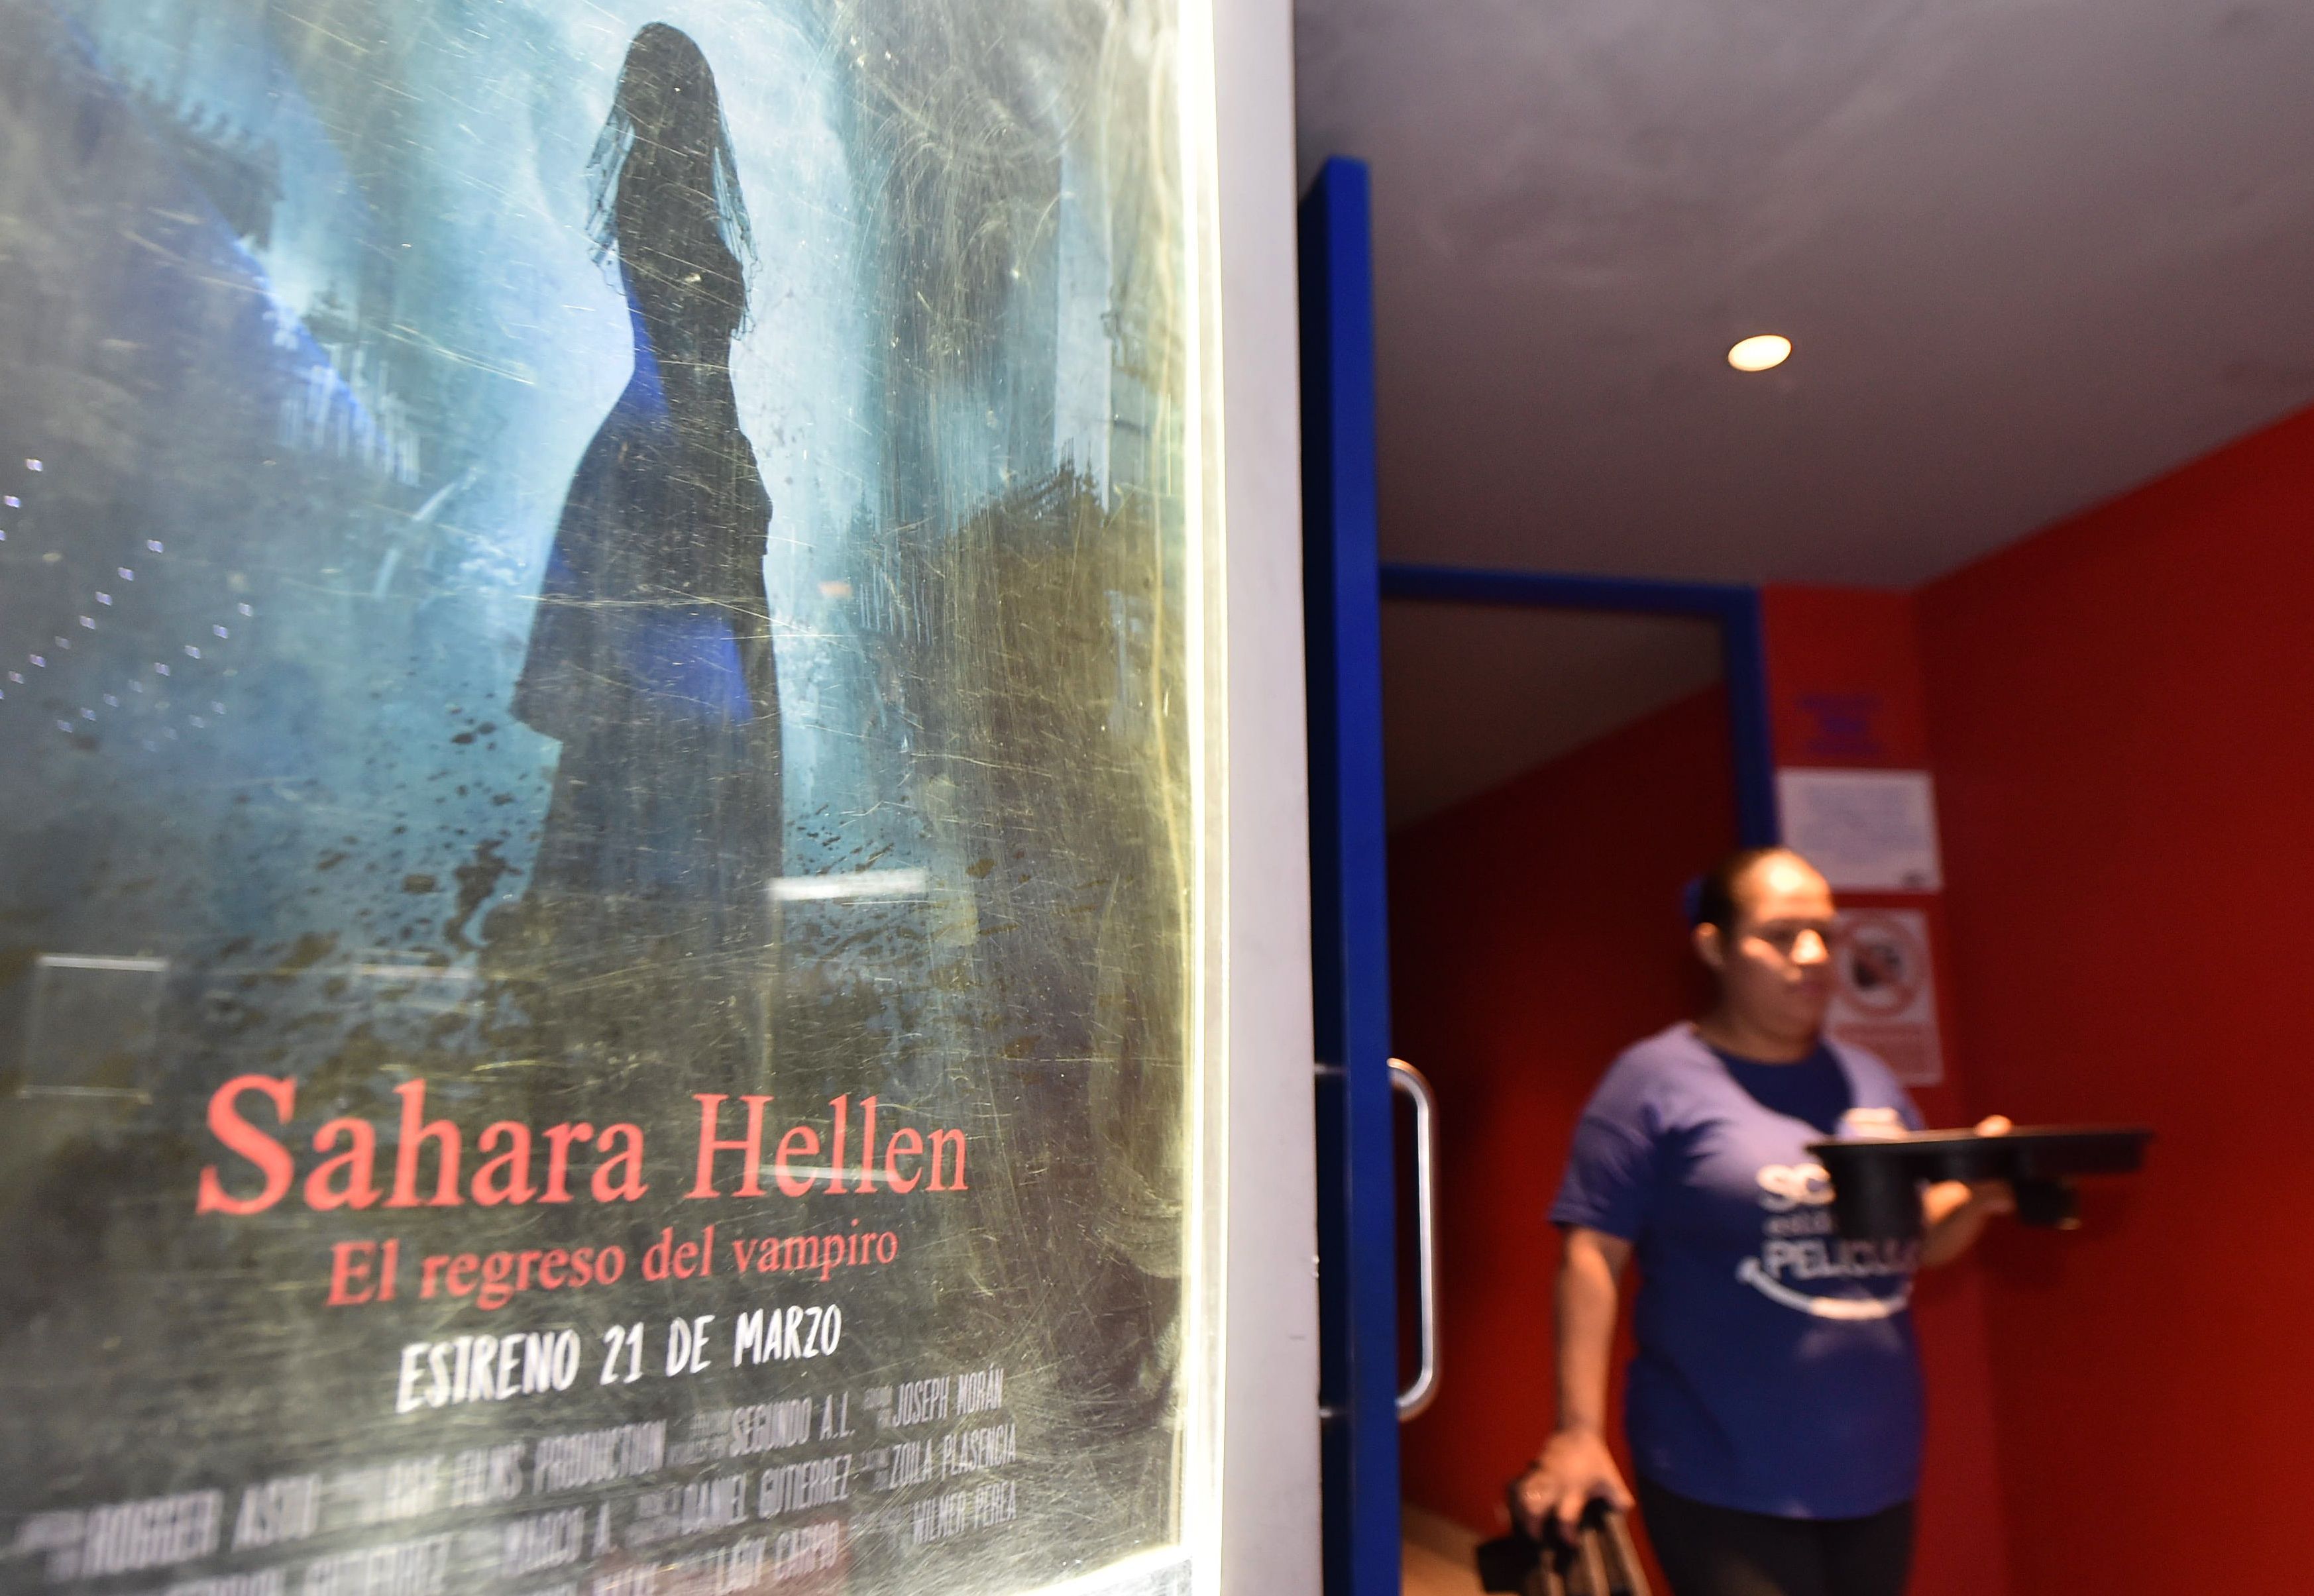 'Sahara Hellen: el regreso del vampiro' reaviva leyenda  de amante del conde Drácula enterrada en Perú